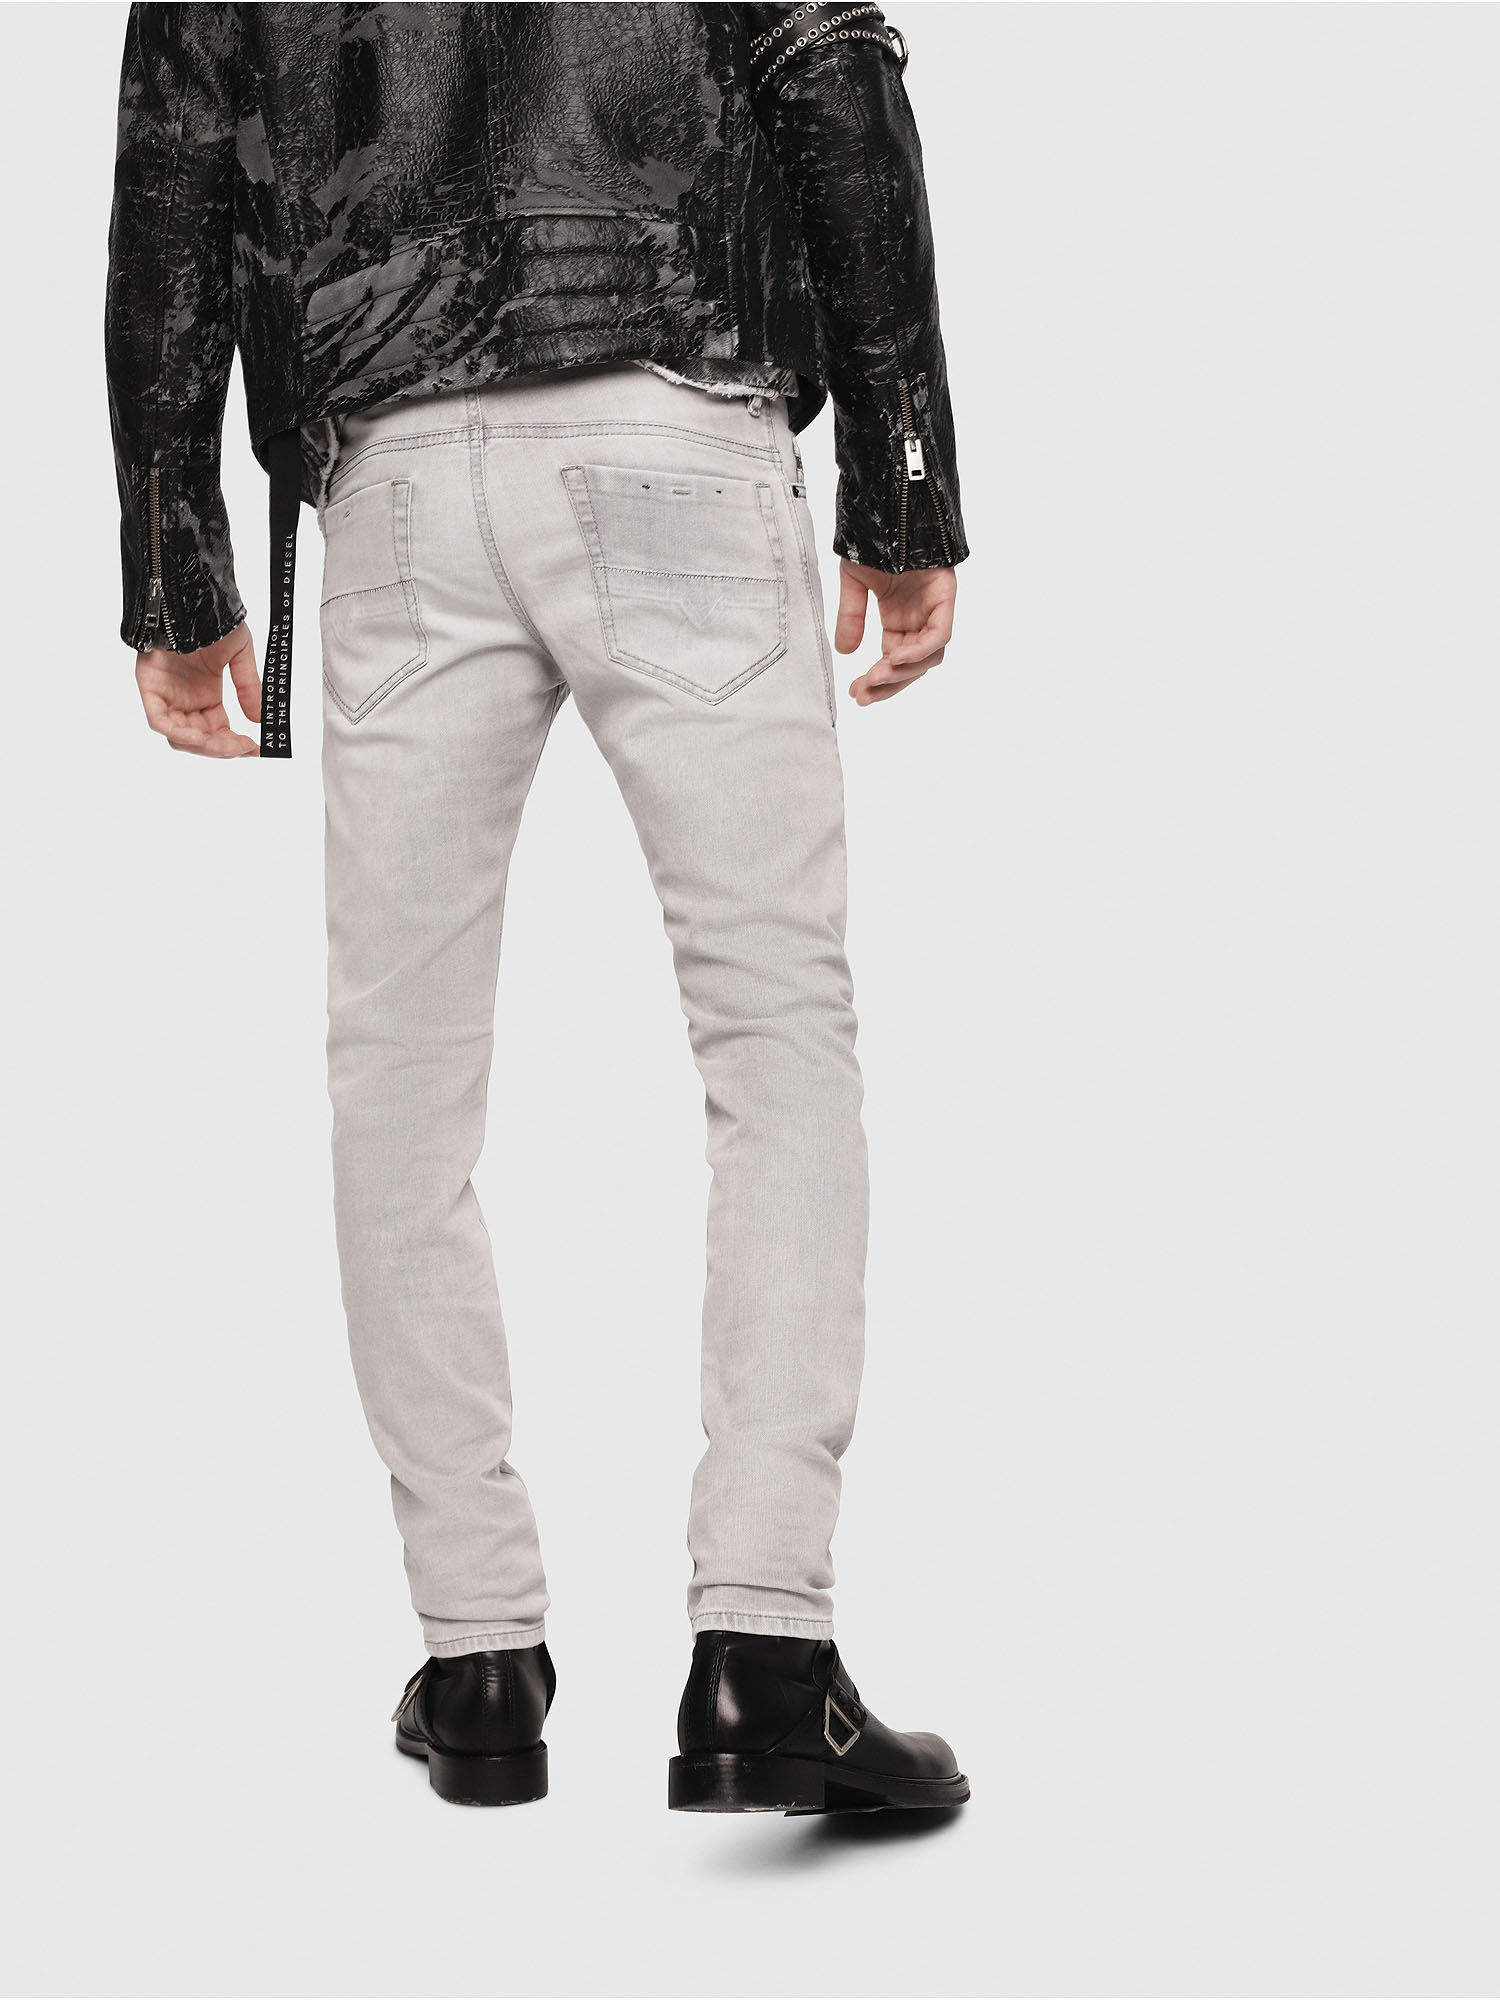 jaqueta jeans levis forrada com pele de carneiro